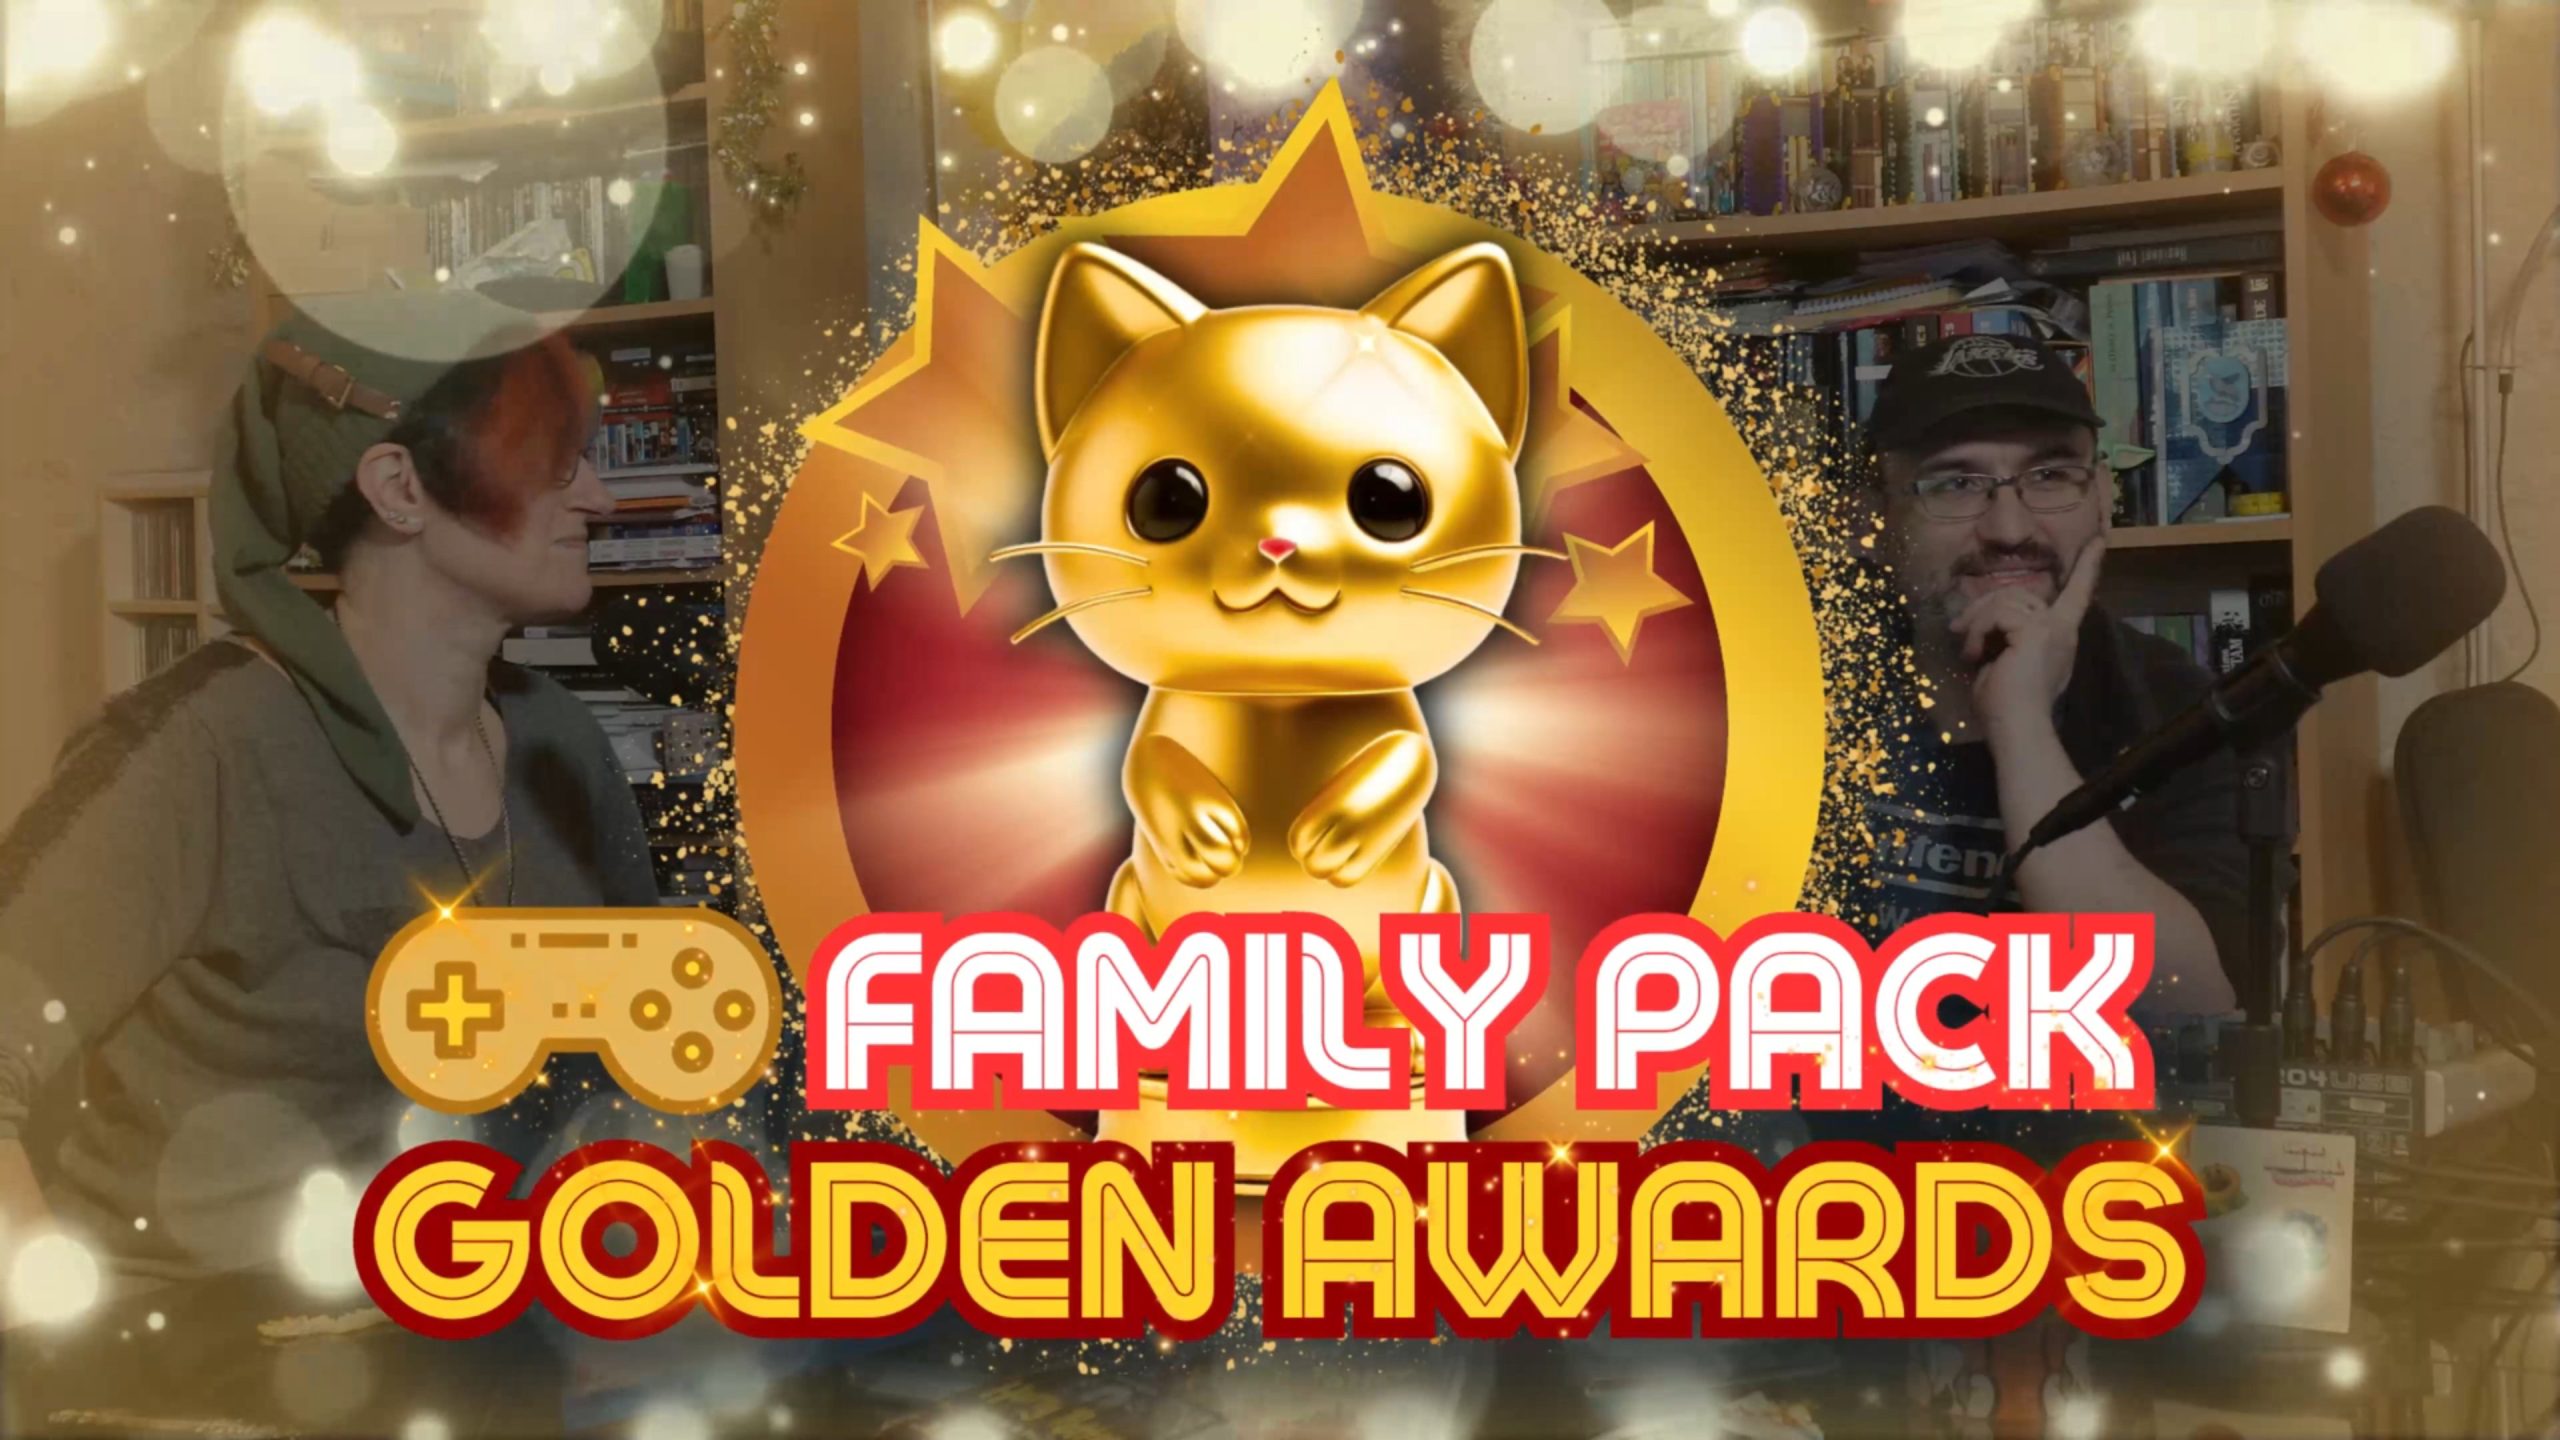 "Family Pack" Golden Awards affiche